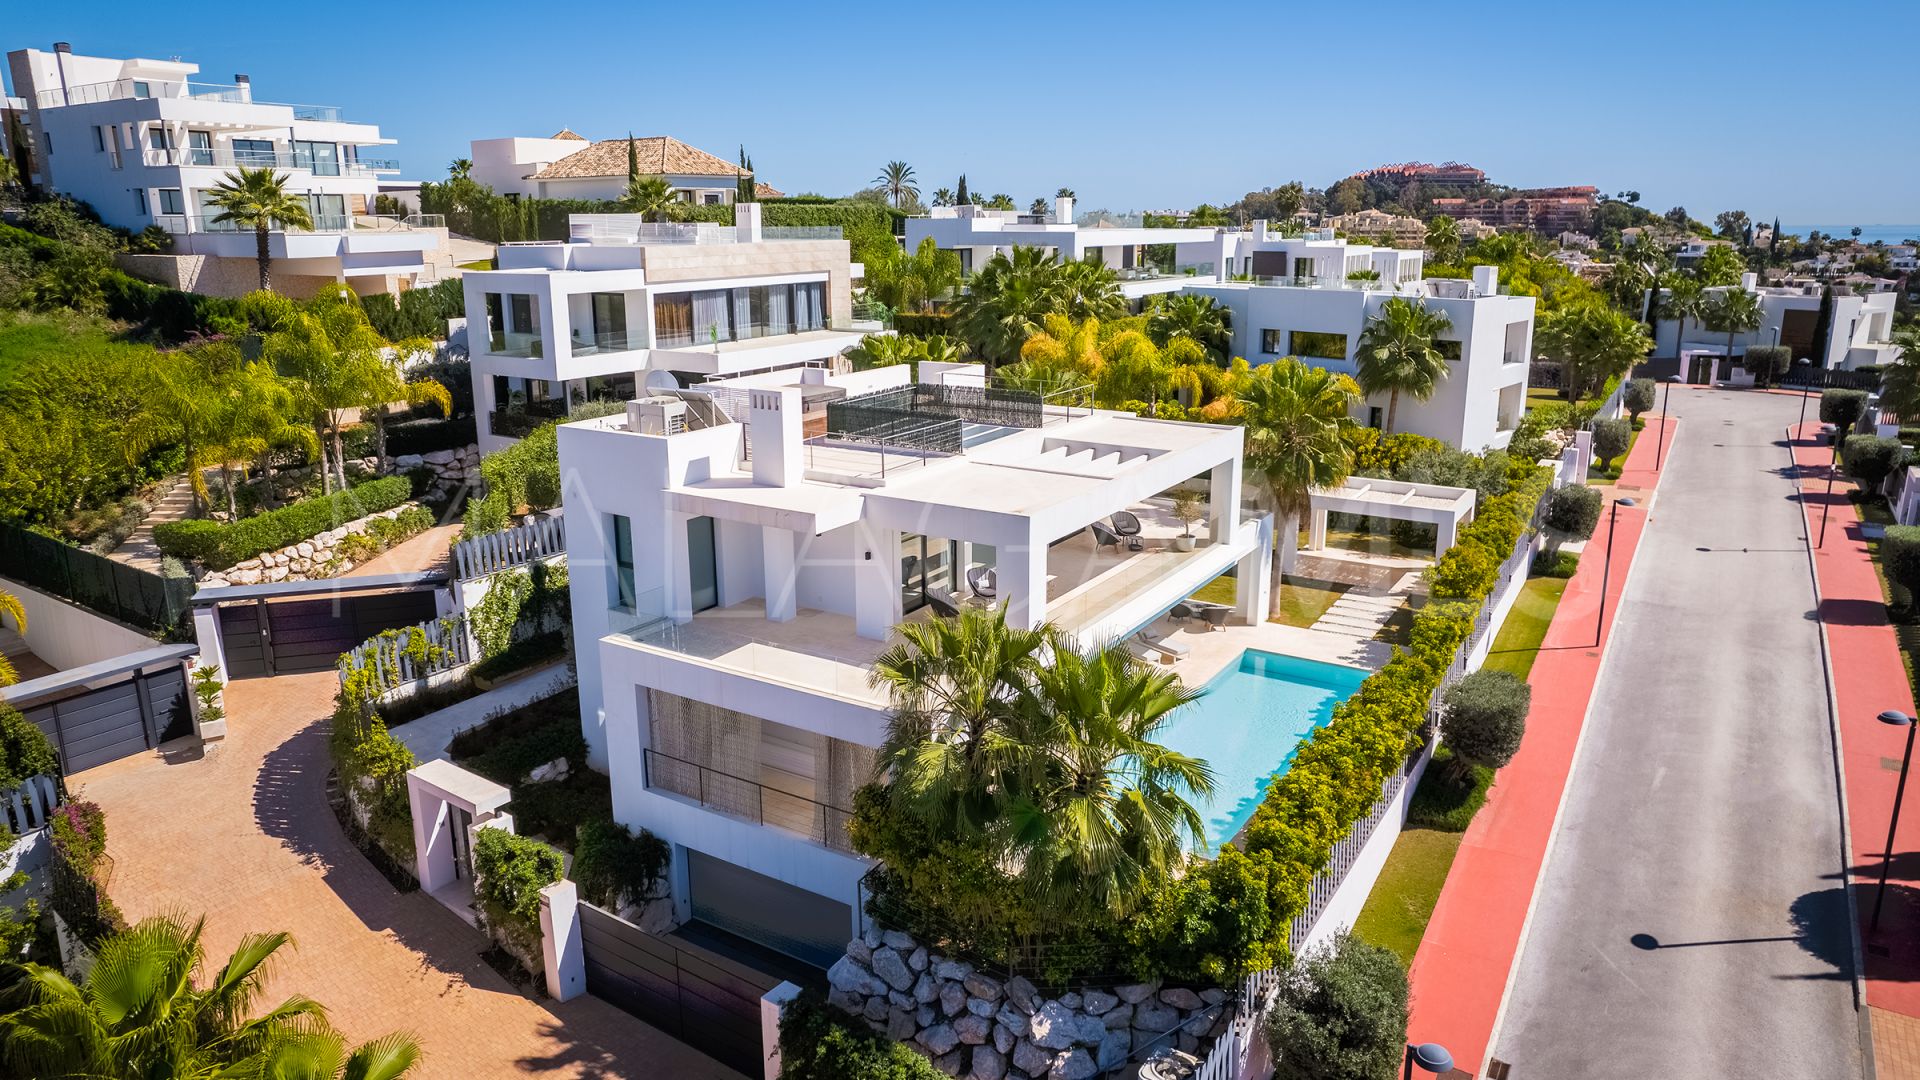 5 bedrooms villa in Los Olivos for sale